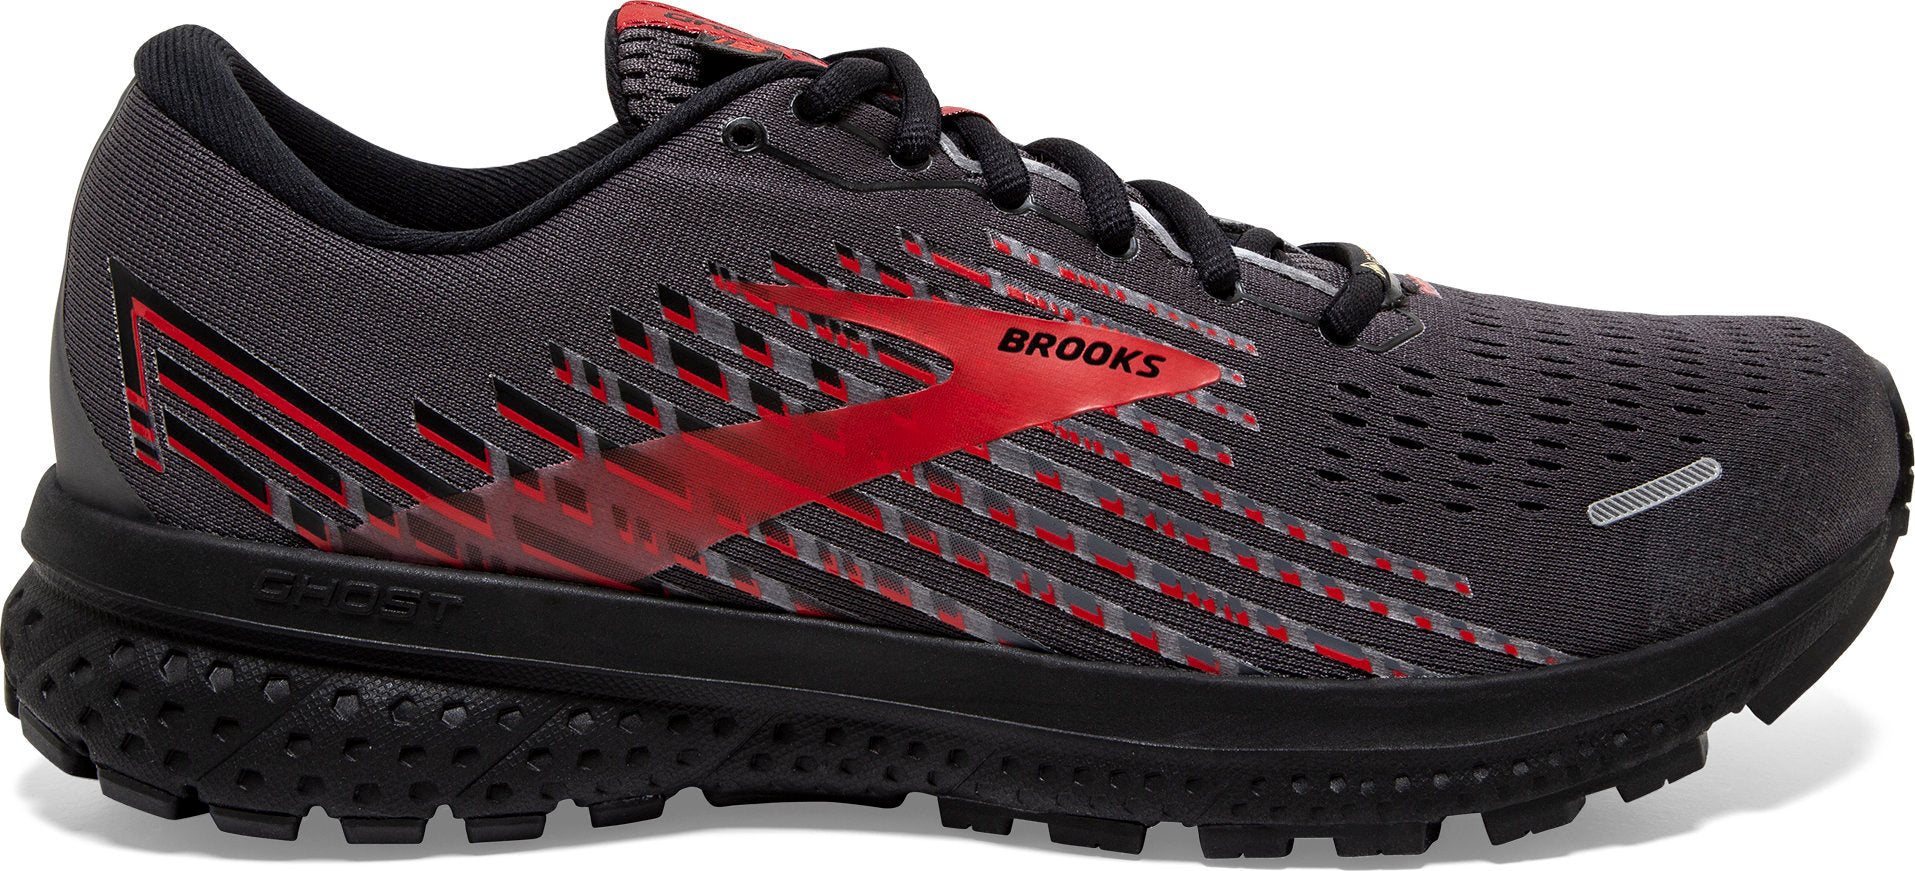 brooks gtx running shoes